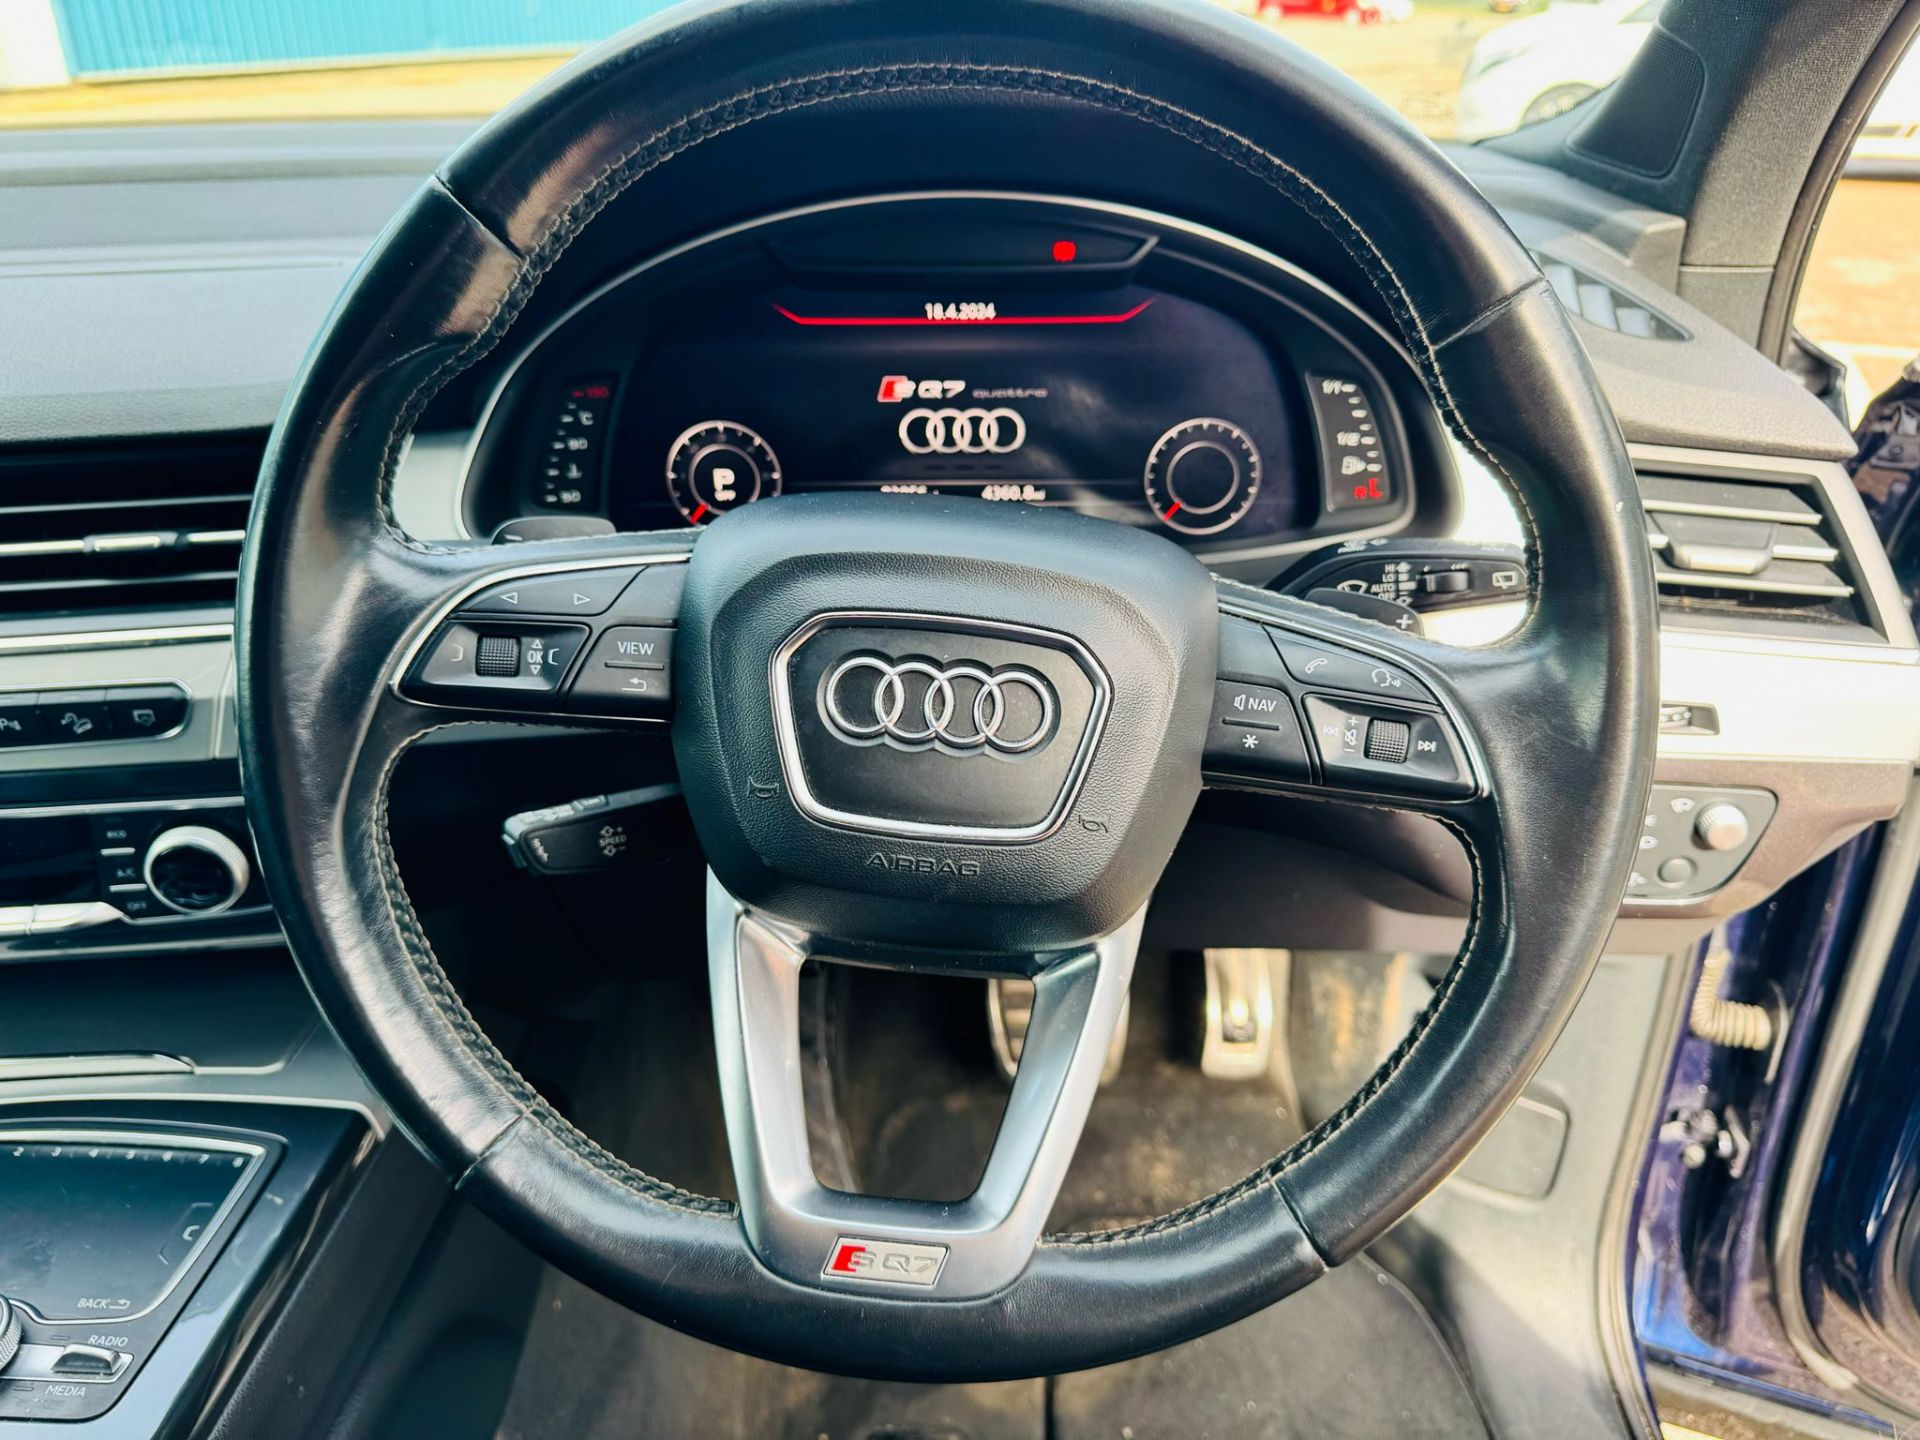 Audi SQ7 4.0TDI V8 Quattro 430BHP "SQ7 EDITION" Auto (7 Seats) 2018 18Reg -Sat Nav -Reversing camera - Image 20 of 37